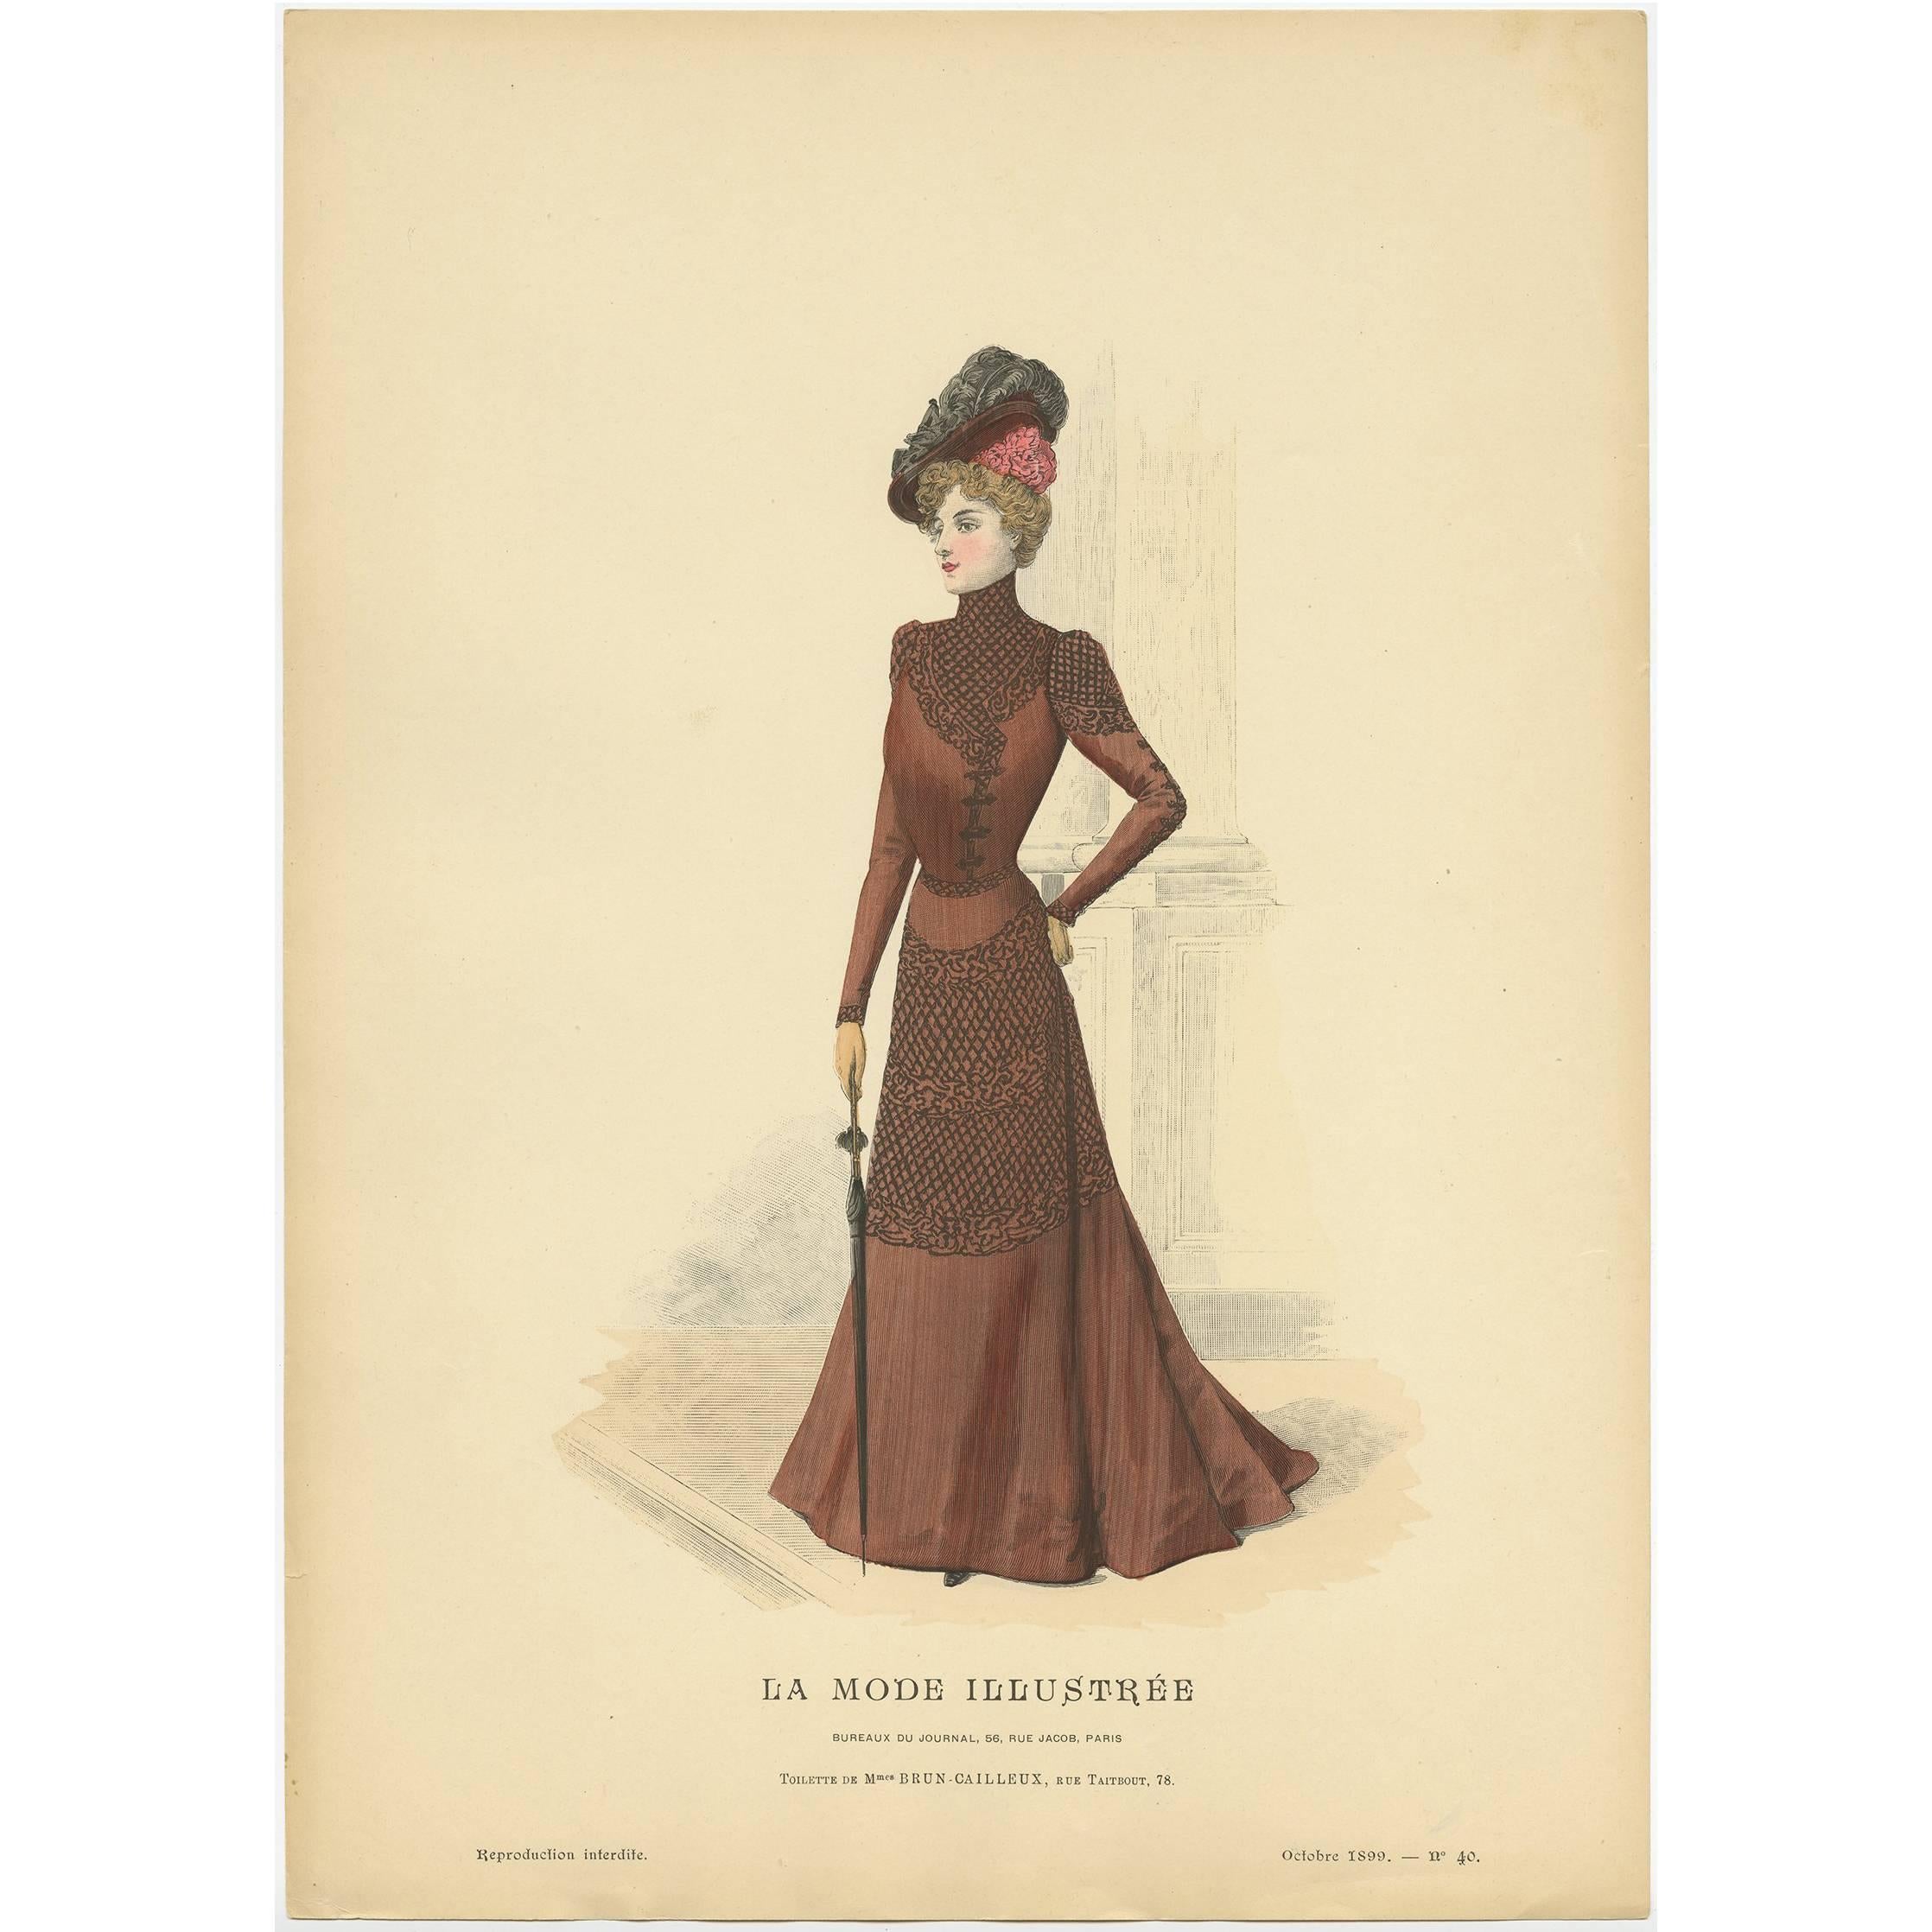 Antique Fashion Print Published by La Mode Illustrée 'No. 40 - 1899' For Sale